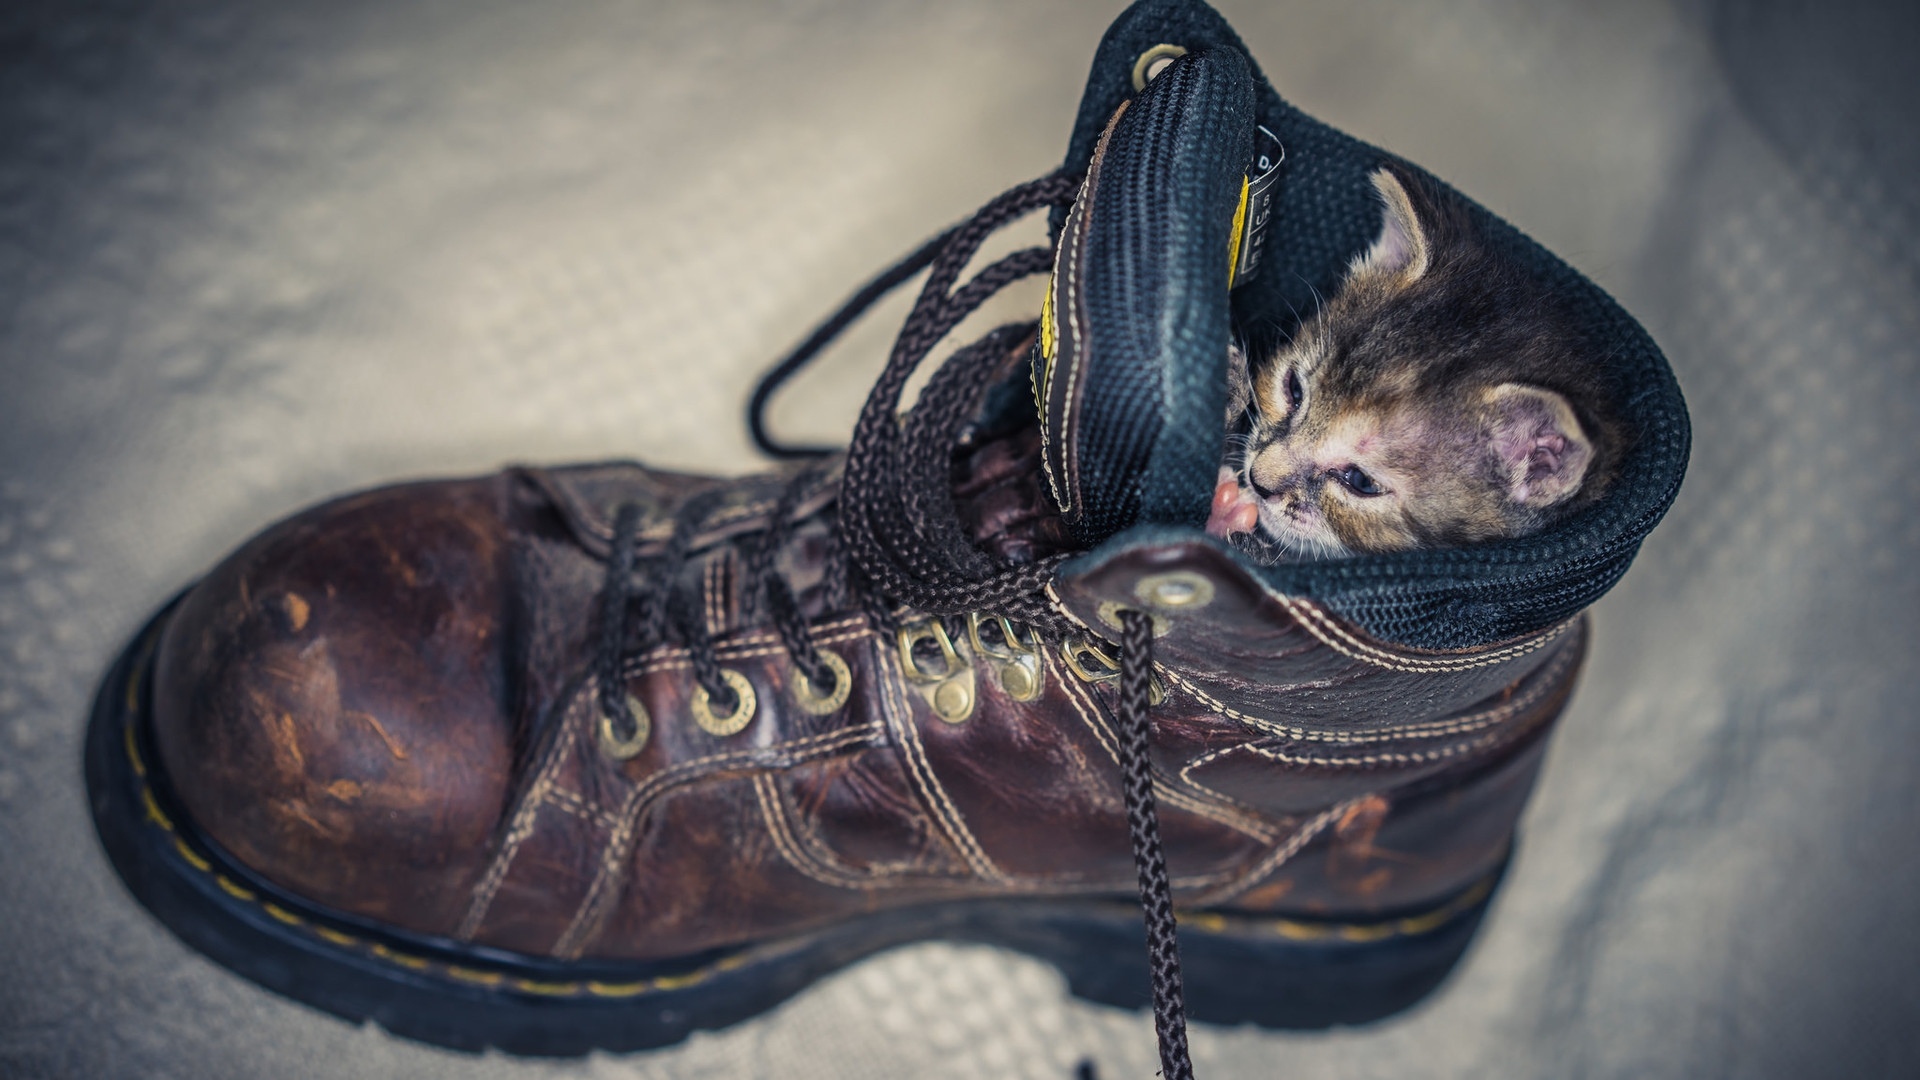 Kitten in Shoe for 1920 x 1080 HDTV 1080p resolution